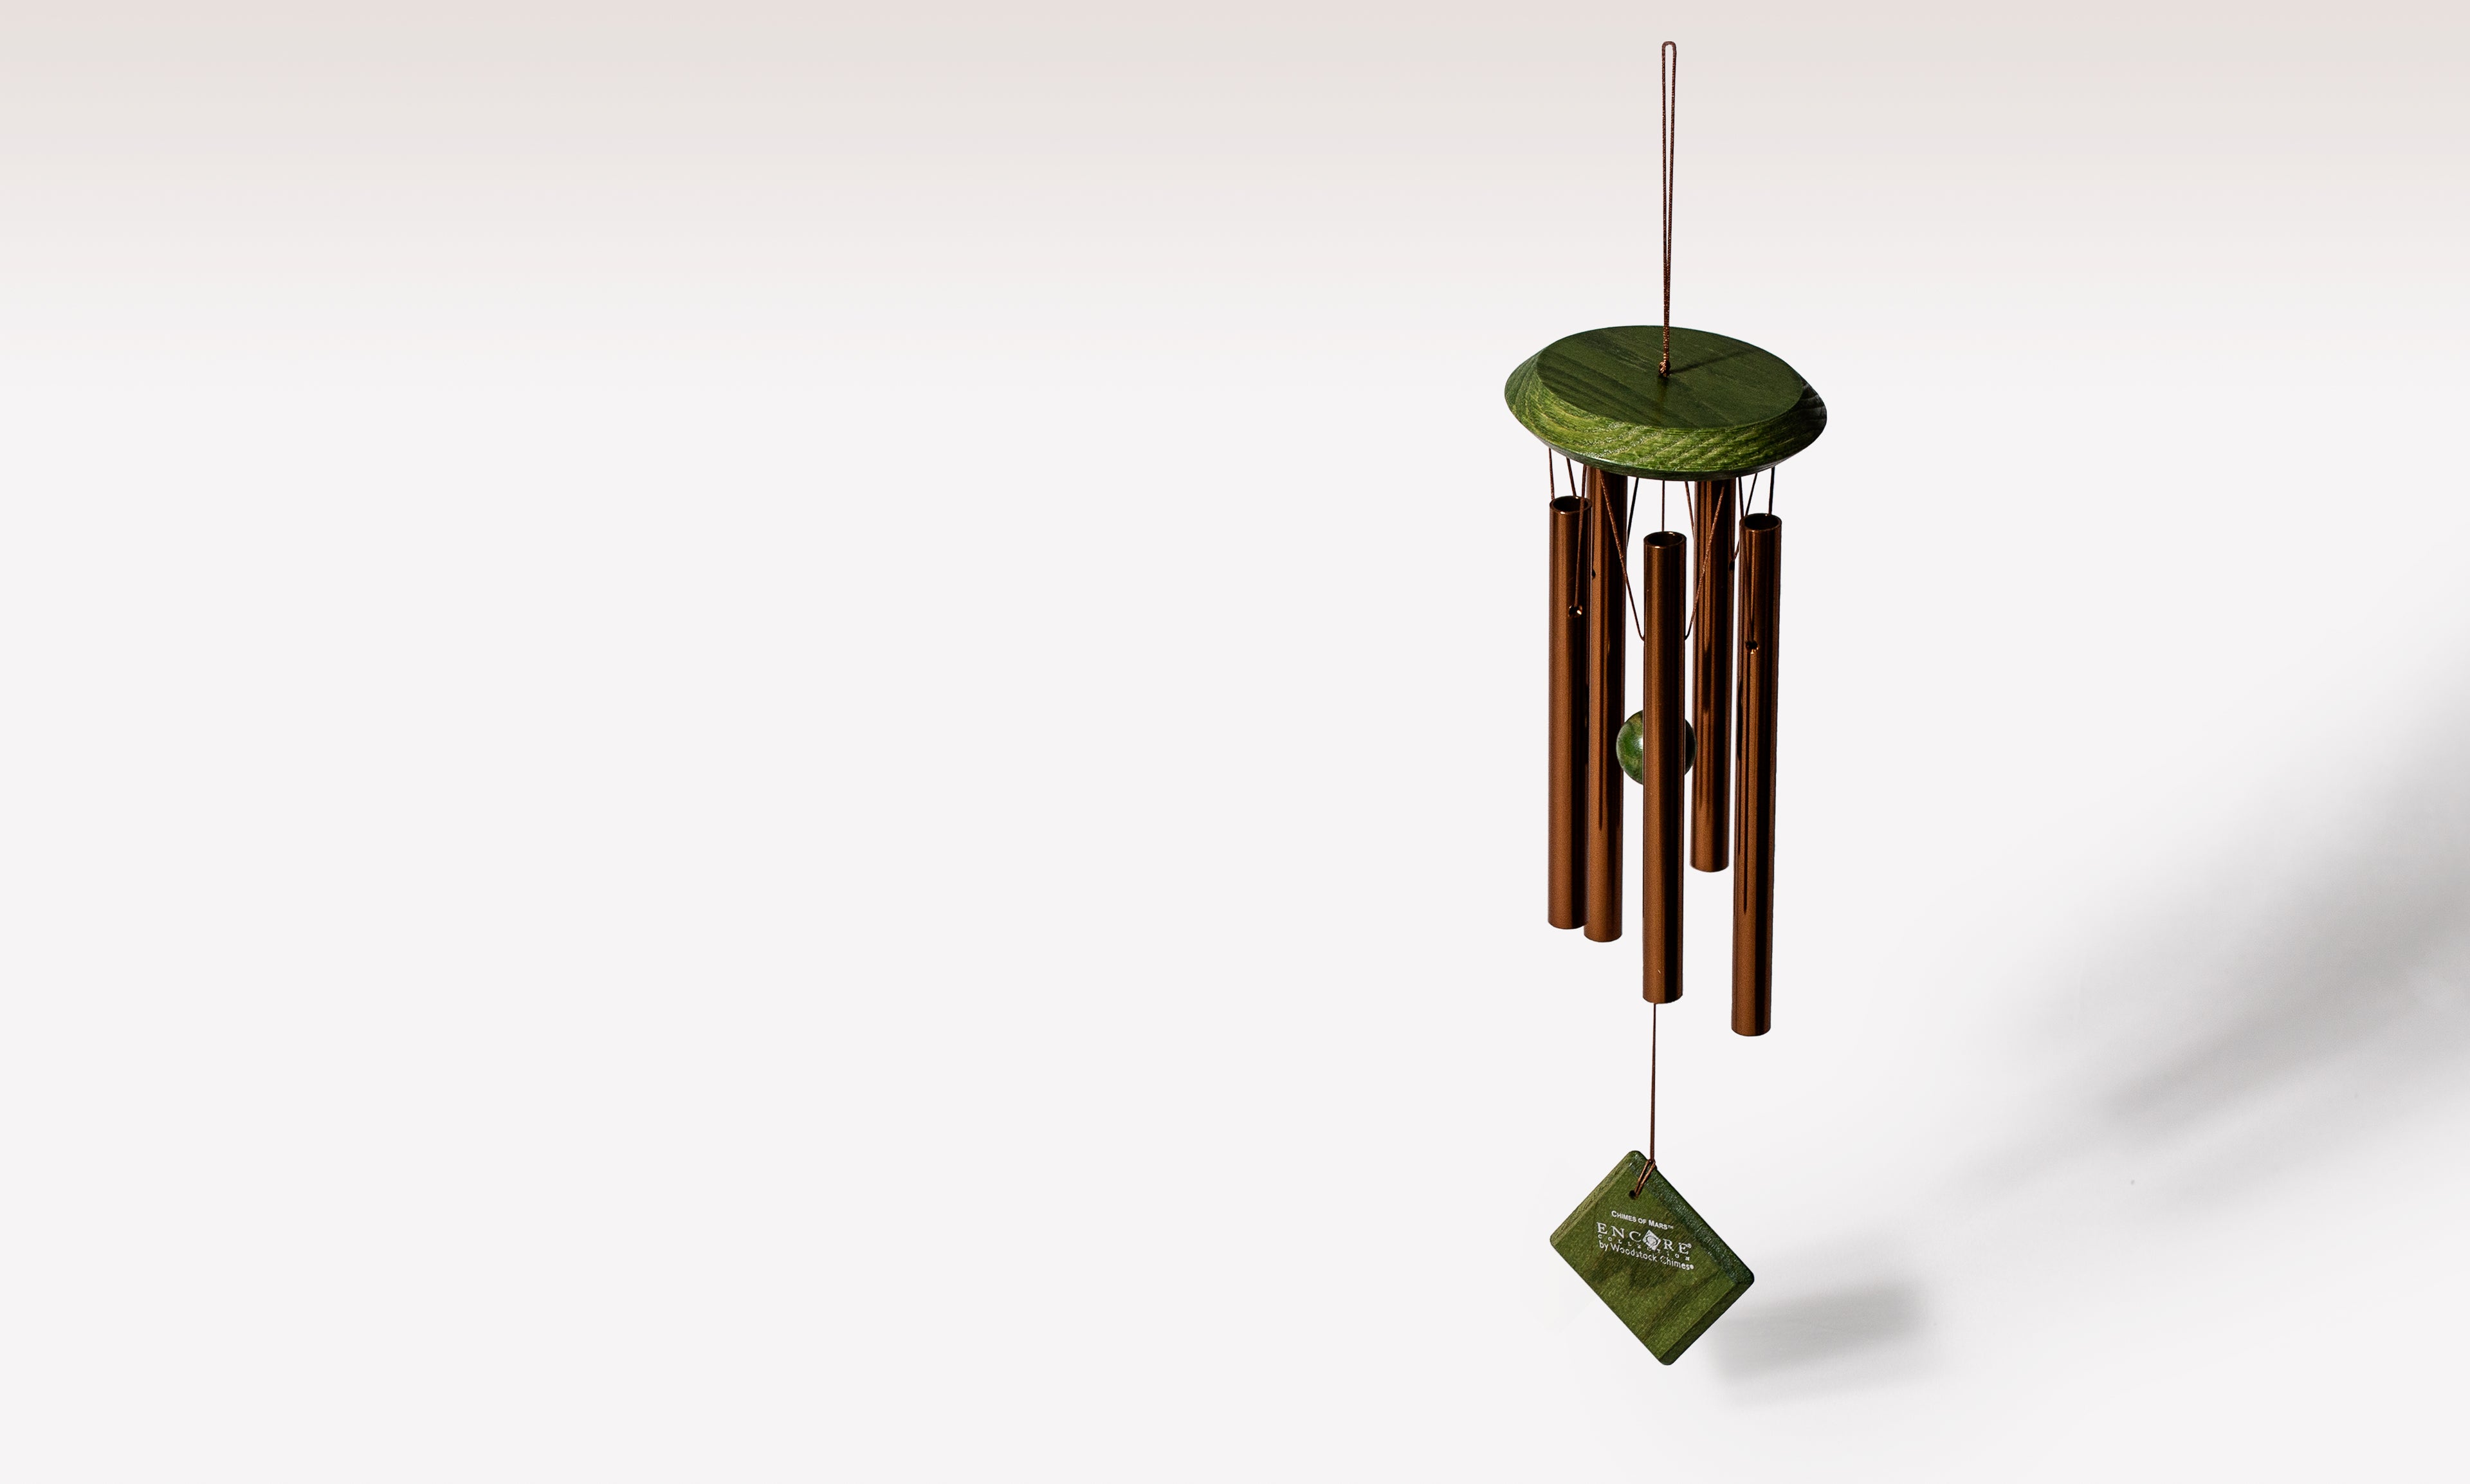 Carillon à vent Woodstock Chimes - Orion argenté - 76cm, Tierra Zen